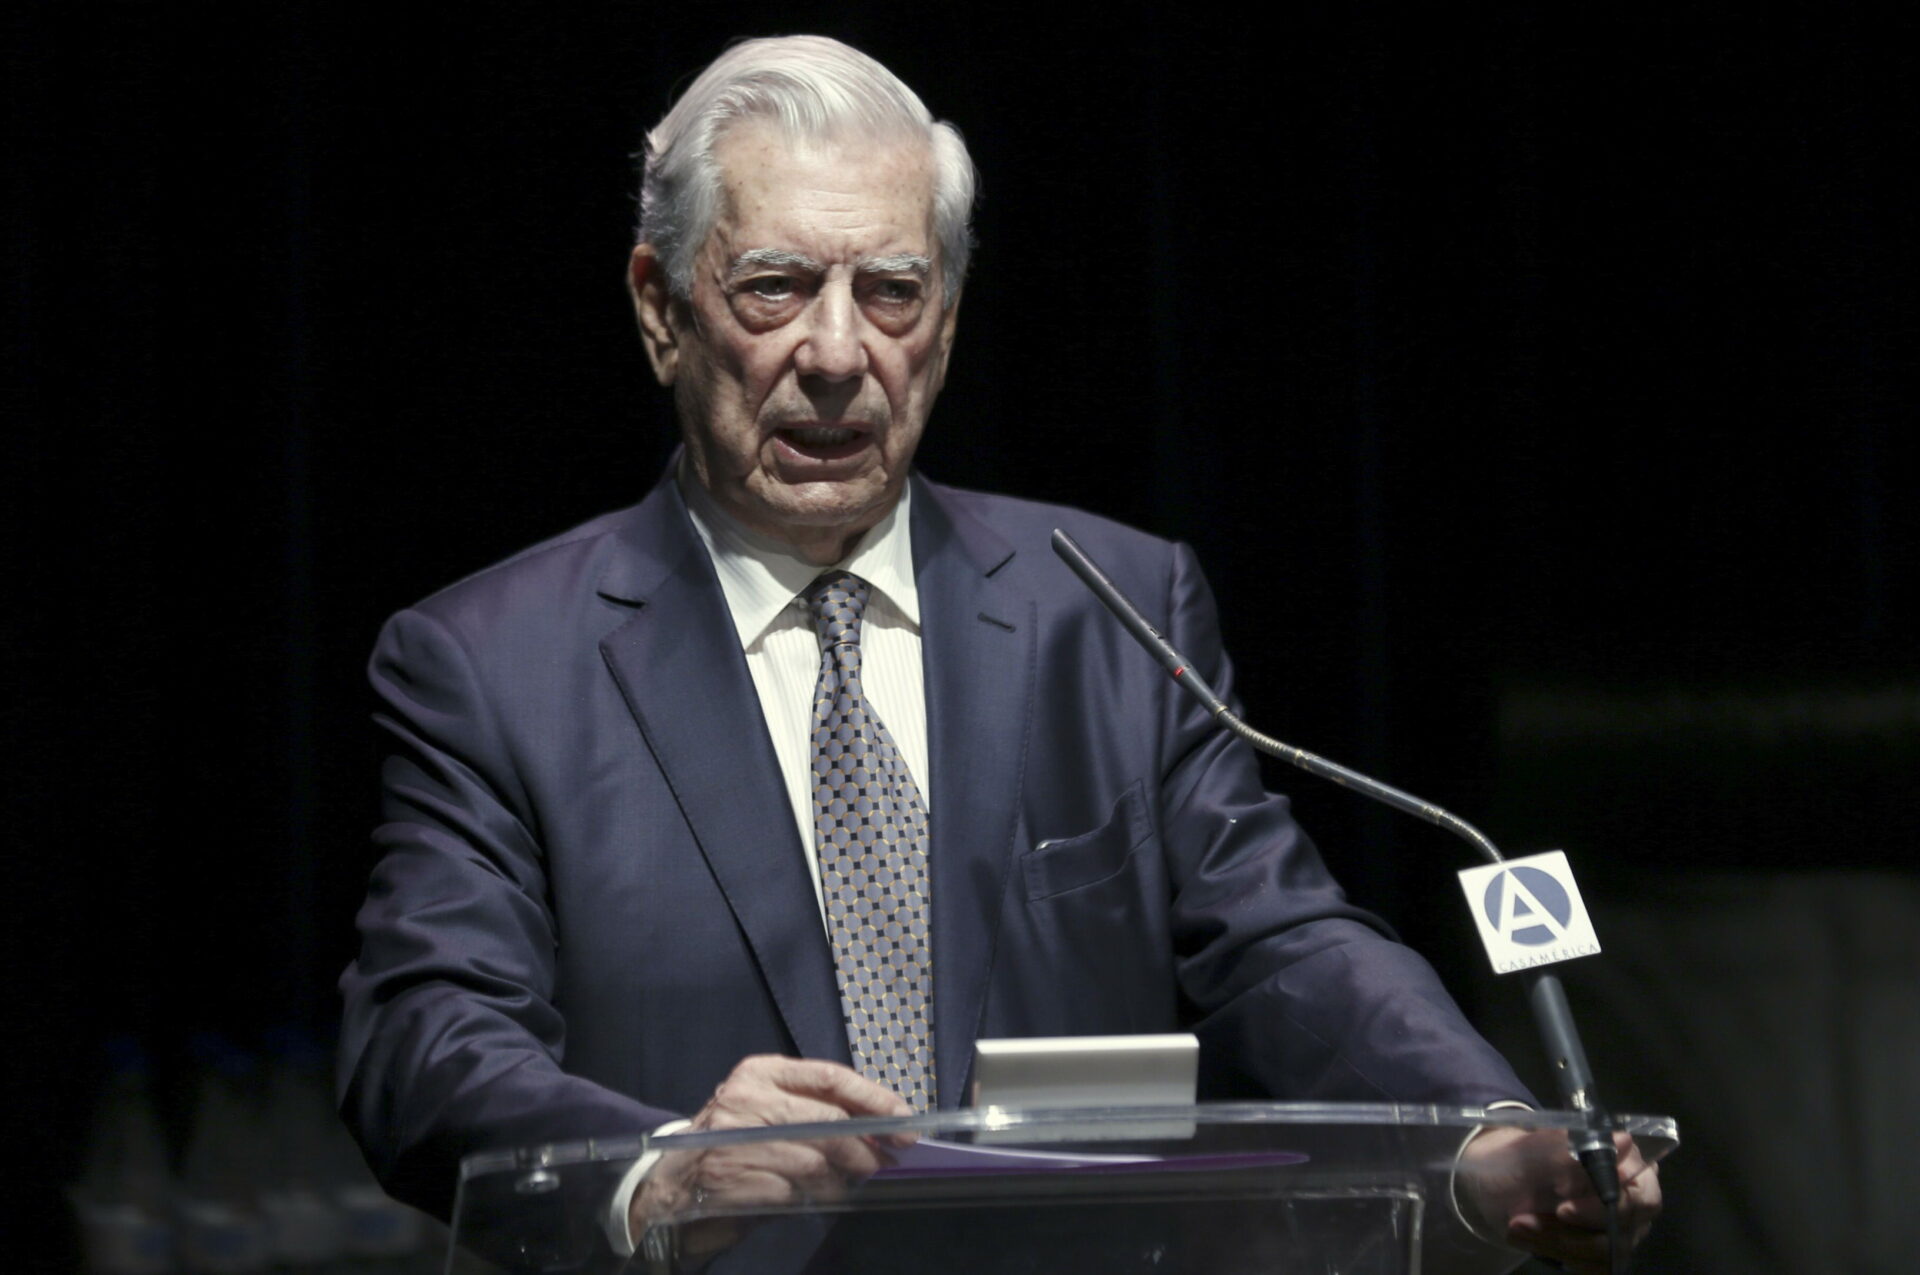 GRA0015. MADRID,02/07/2015.- El premio Nobel de literatura Mario Vargas Llosa durante su intervención en el debate sobre democracia y populismo en Latinoamérica en el llamado Foro Atlántico celebrado hoy en la Casa América.-EFE/SERGIO BARRENECHEA.